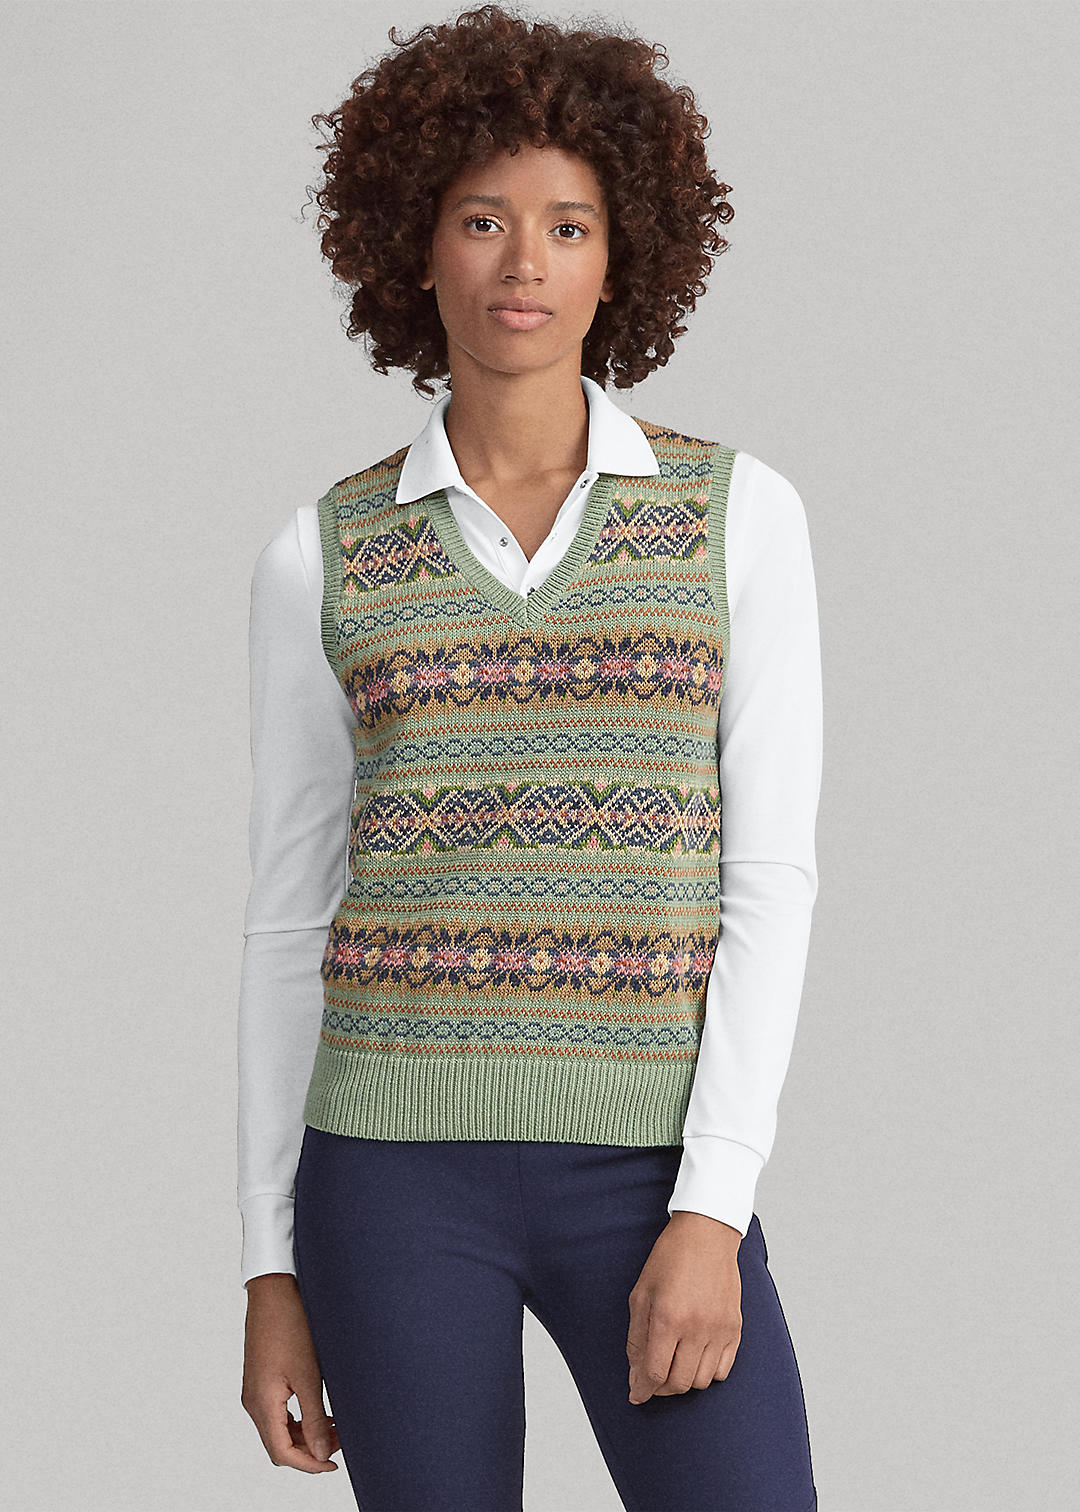 Actualizar 33+ imagen polo ralph lauren men's fair isle sweater vest ...